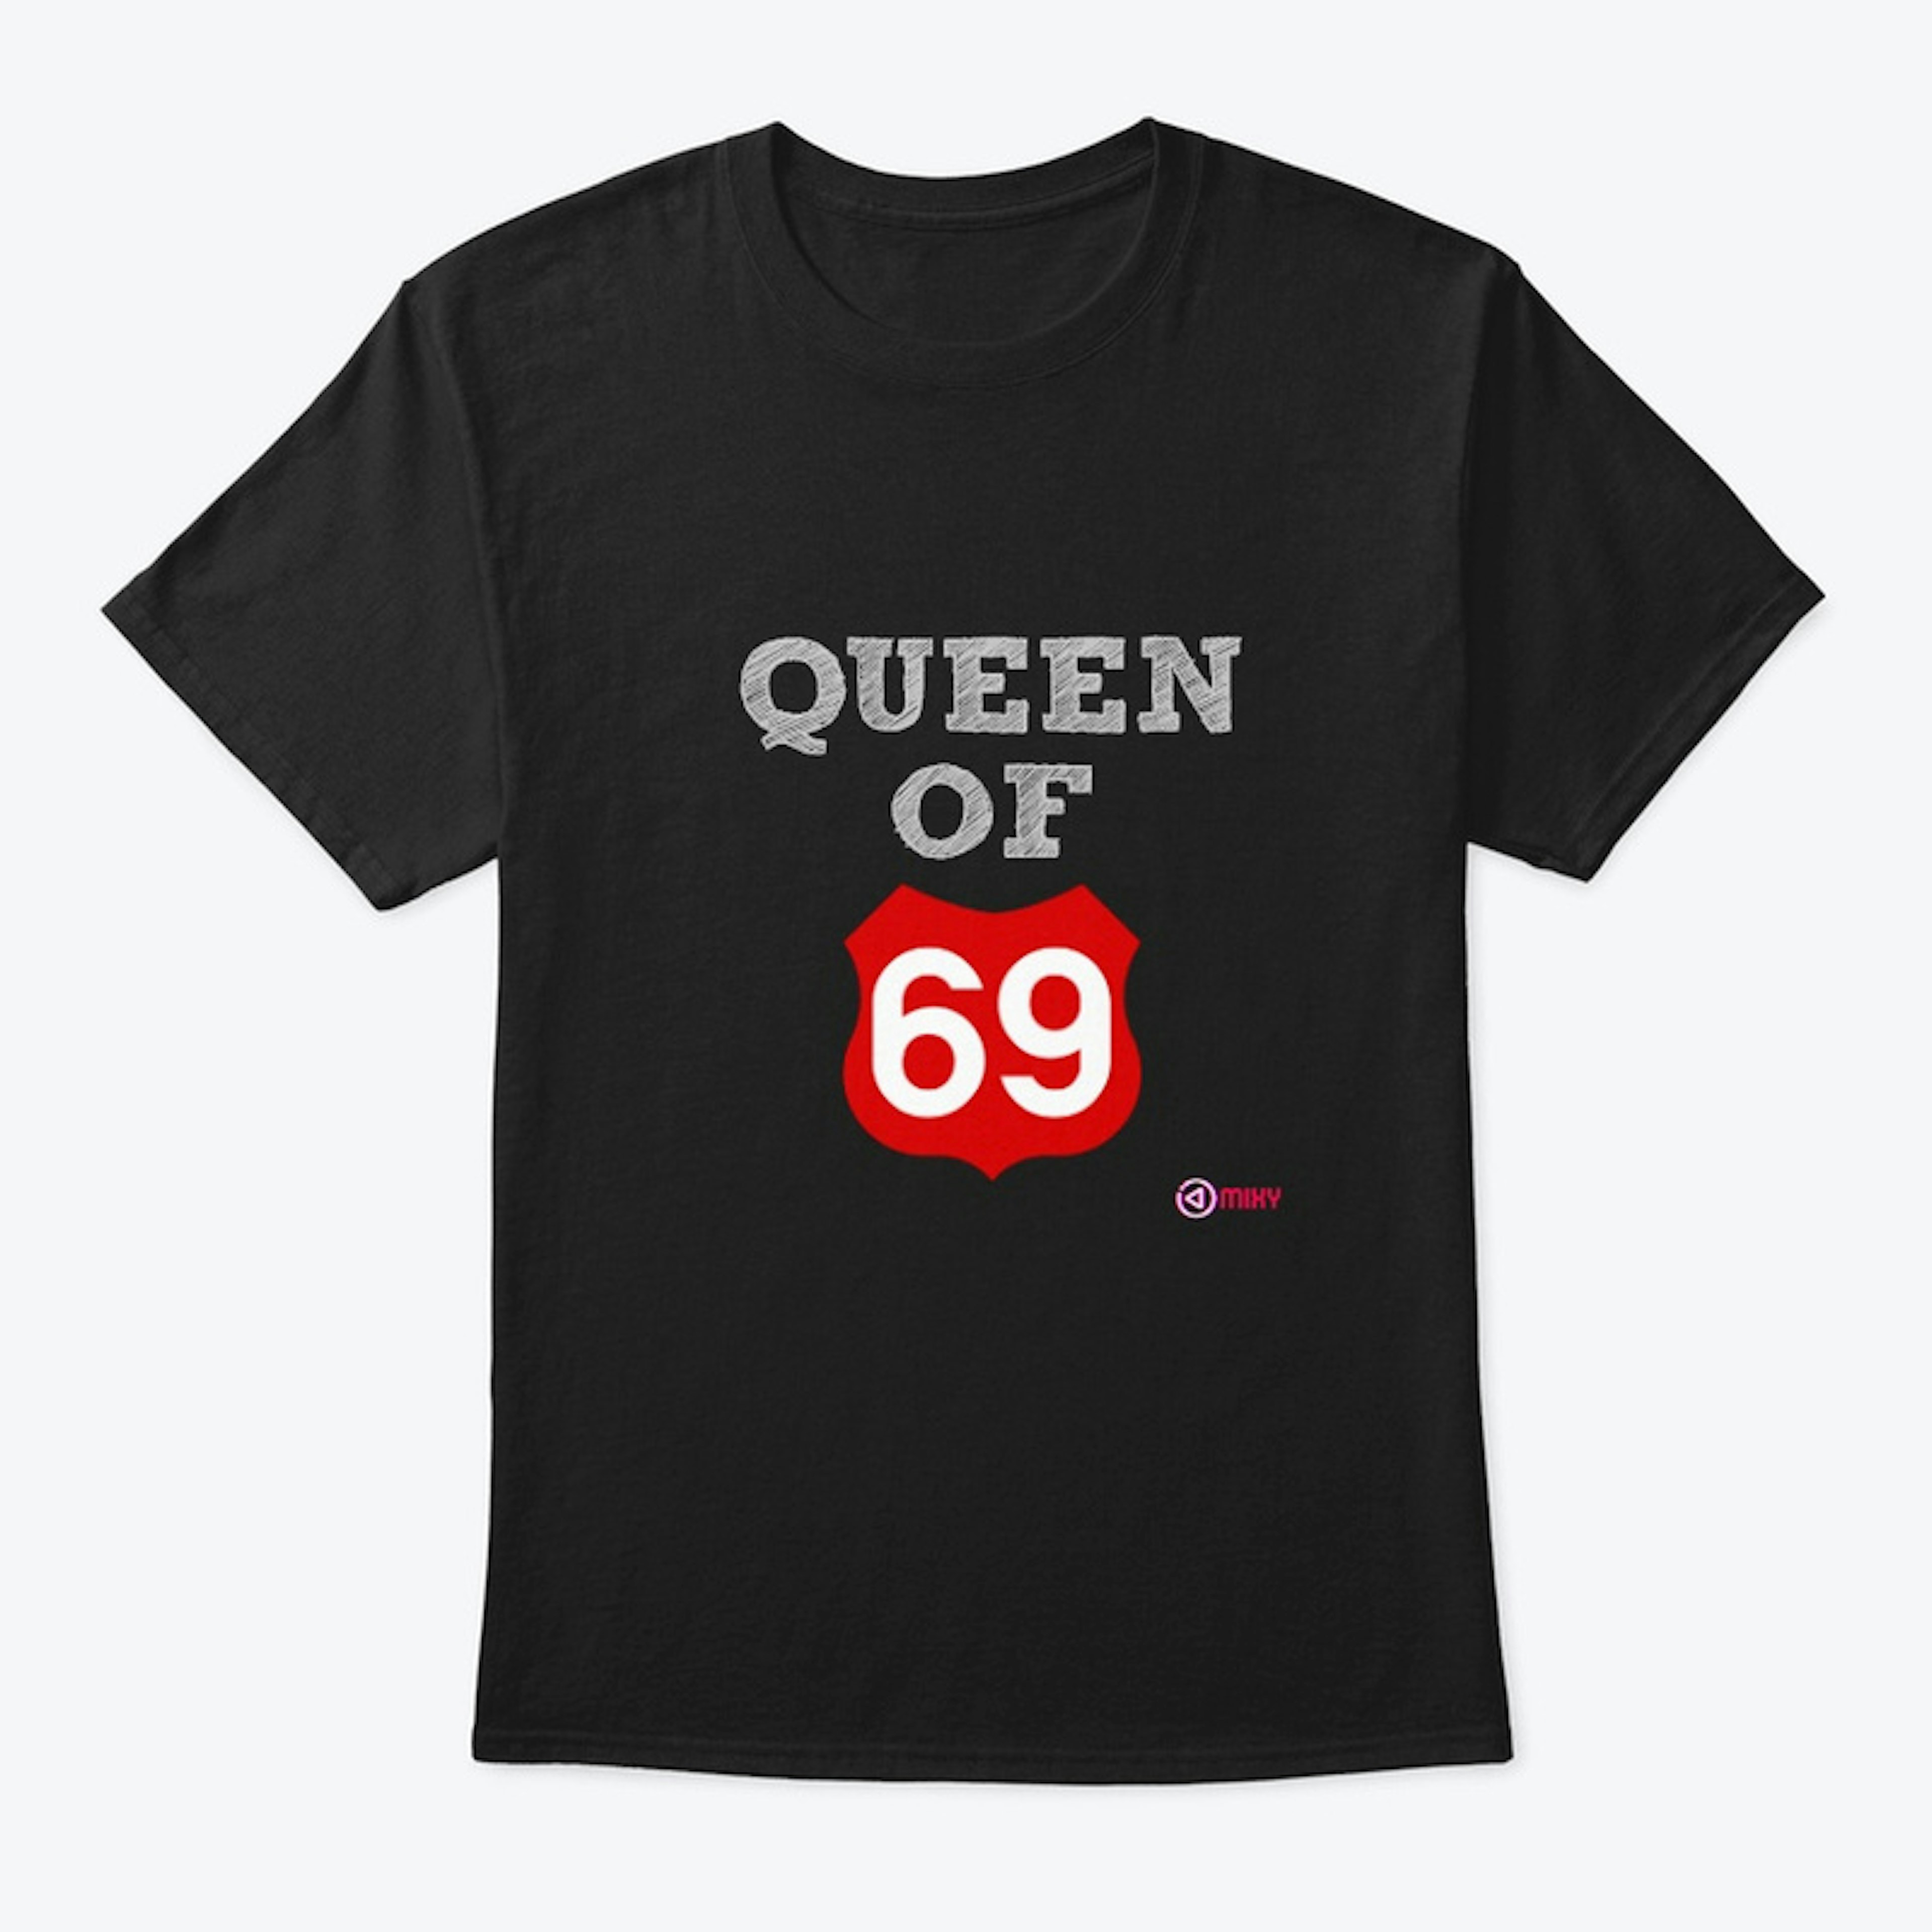 QUEEN OF 69